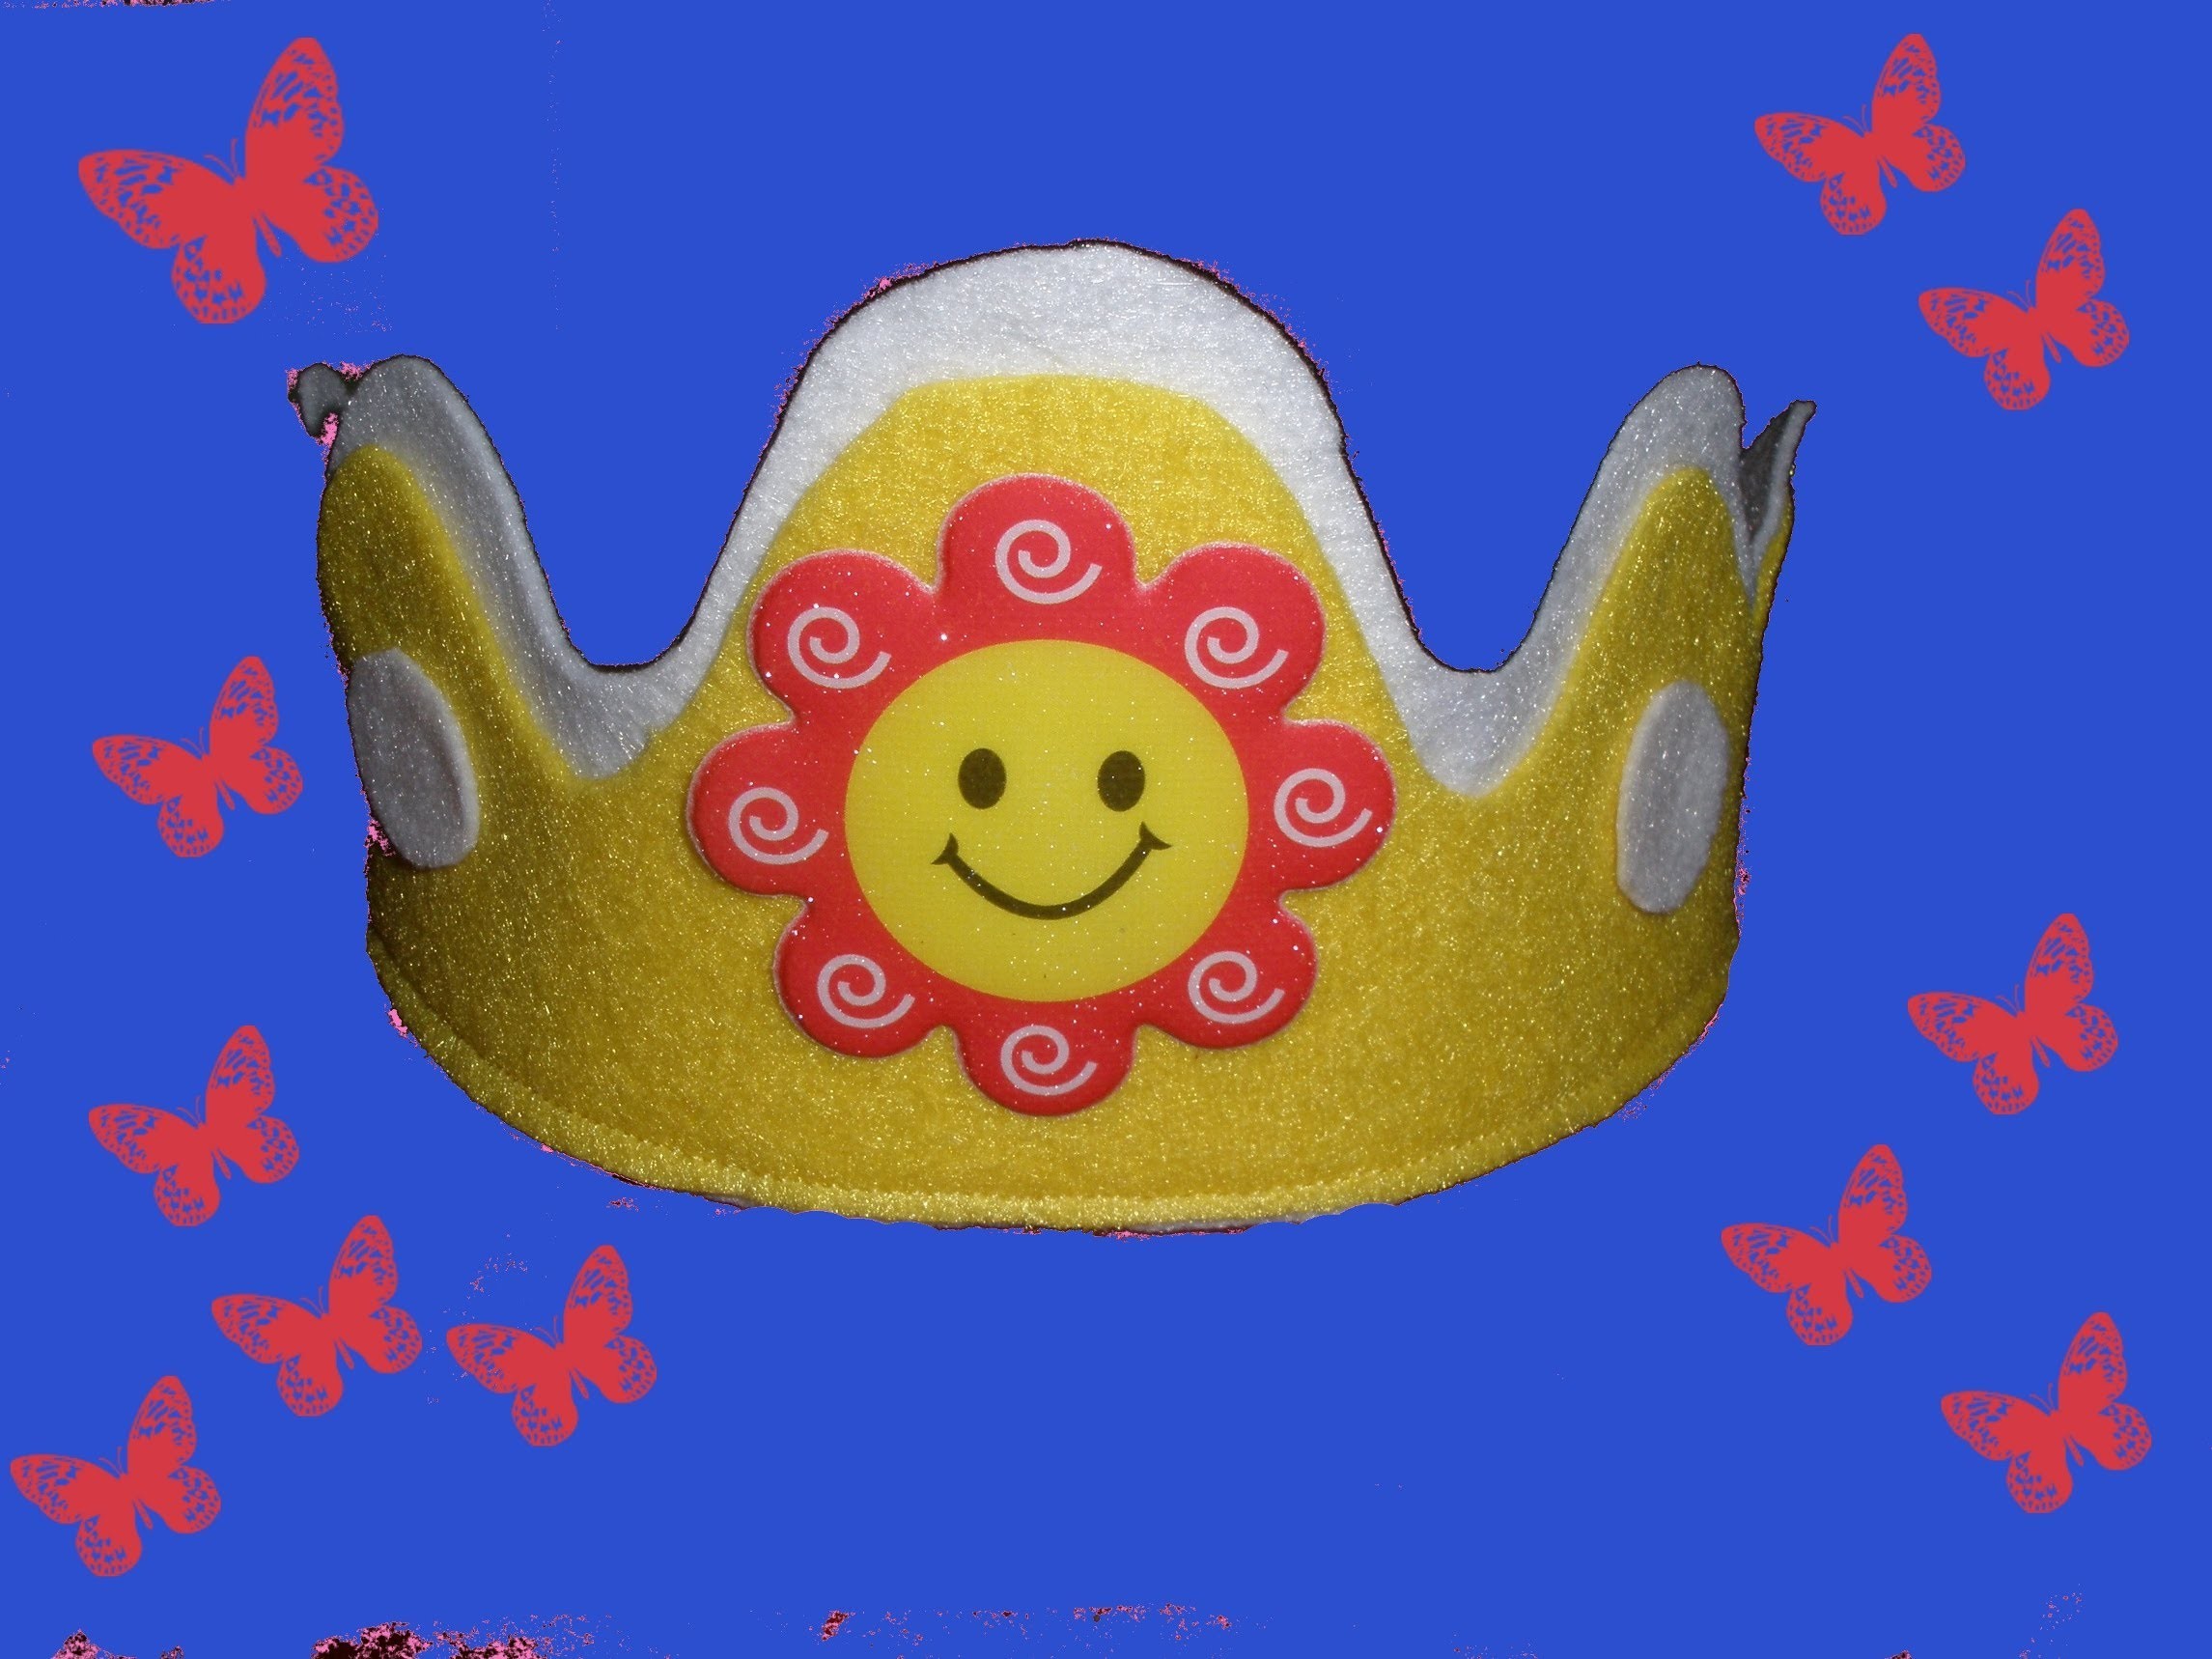 Como hacer una corona de princesas, princess crown DIY.